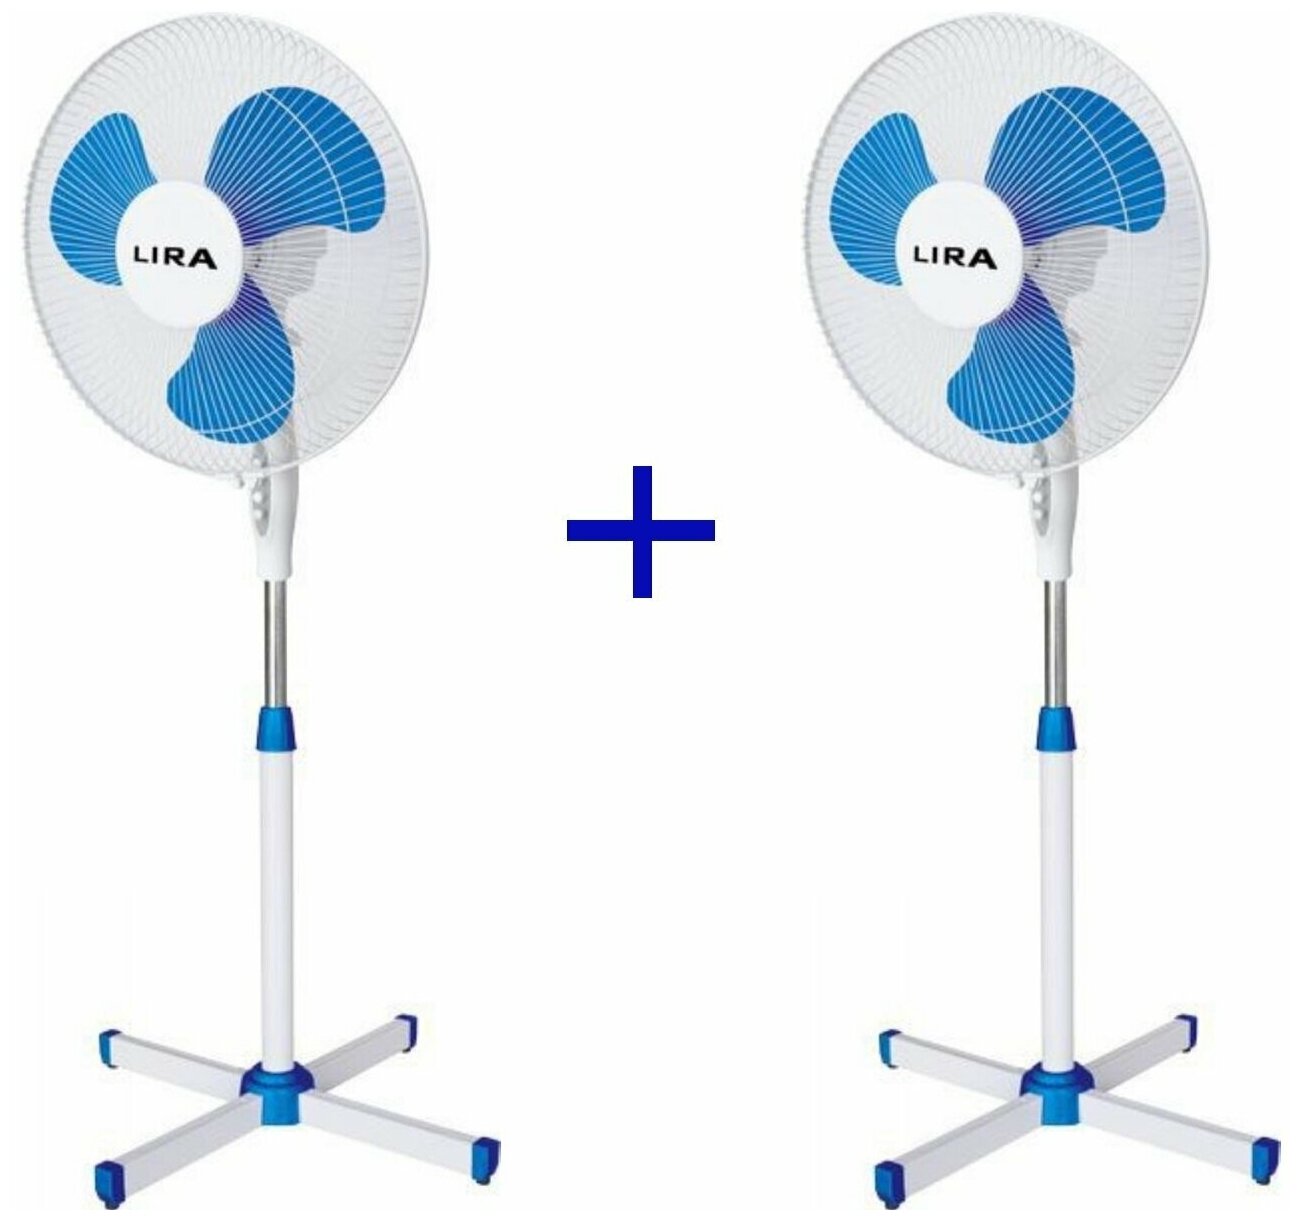 Вентилятор напольный LIRA LR1101 55Вт (2шт/уп) 3 скорости (2 шт) (1747.50р / шт)